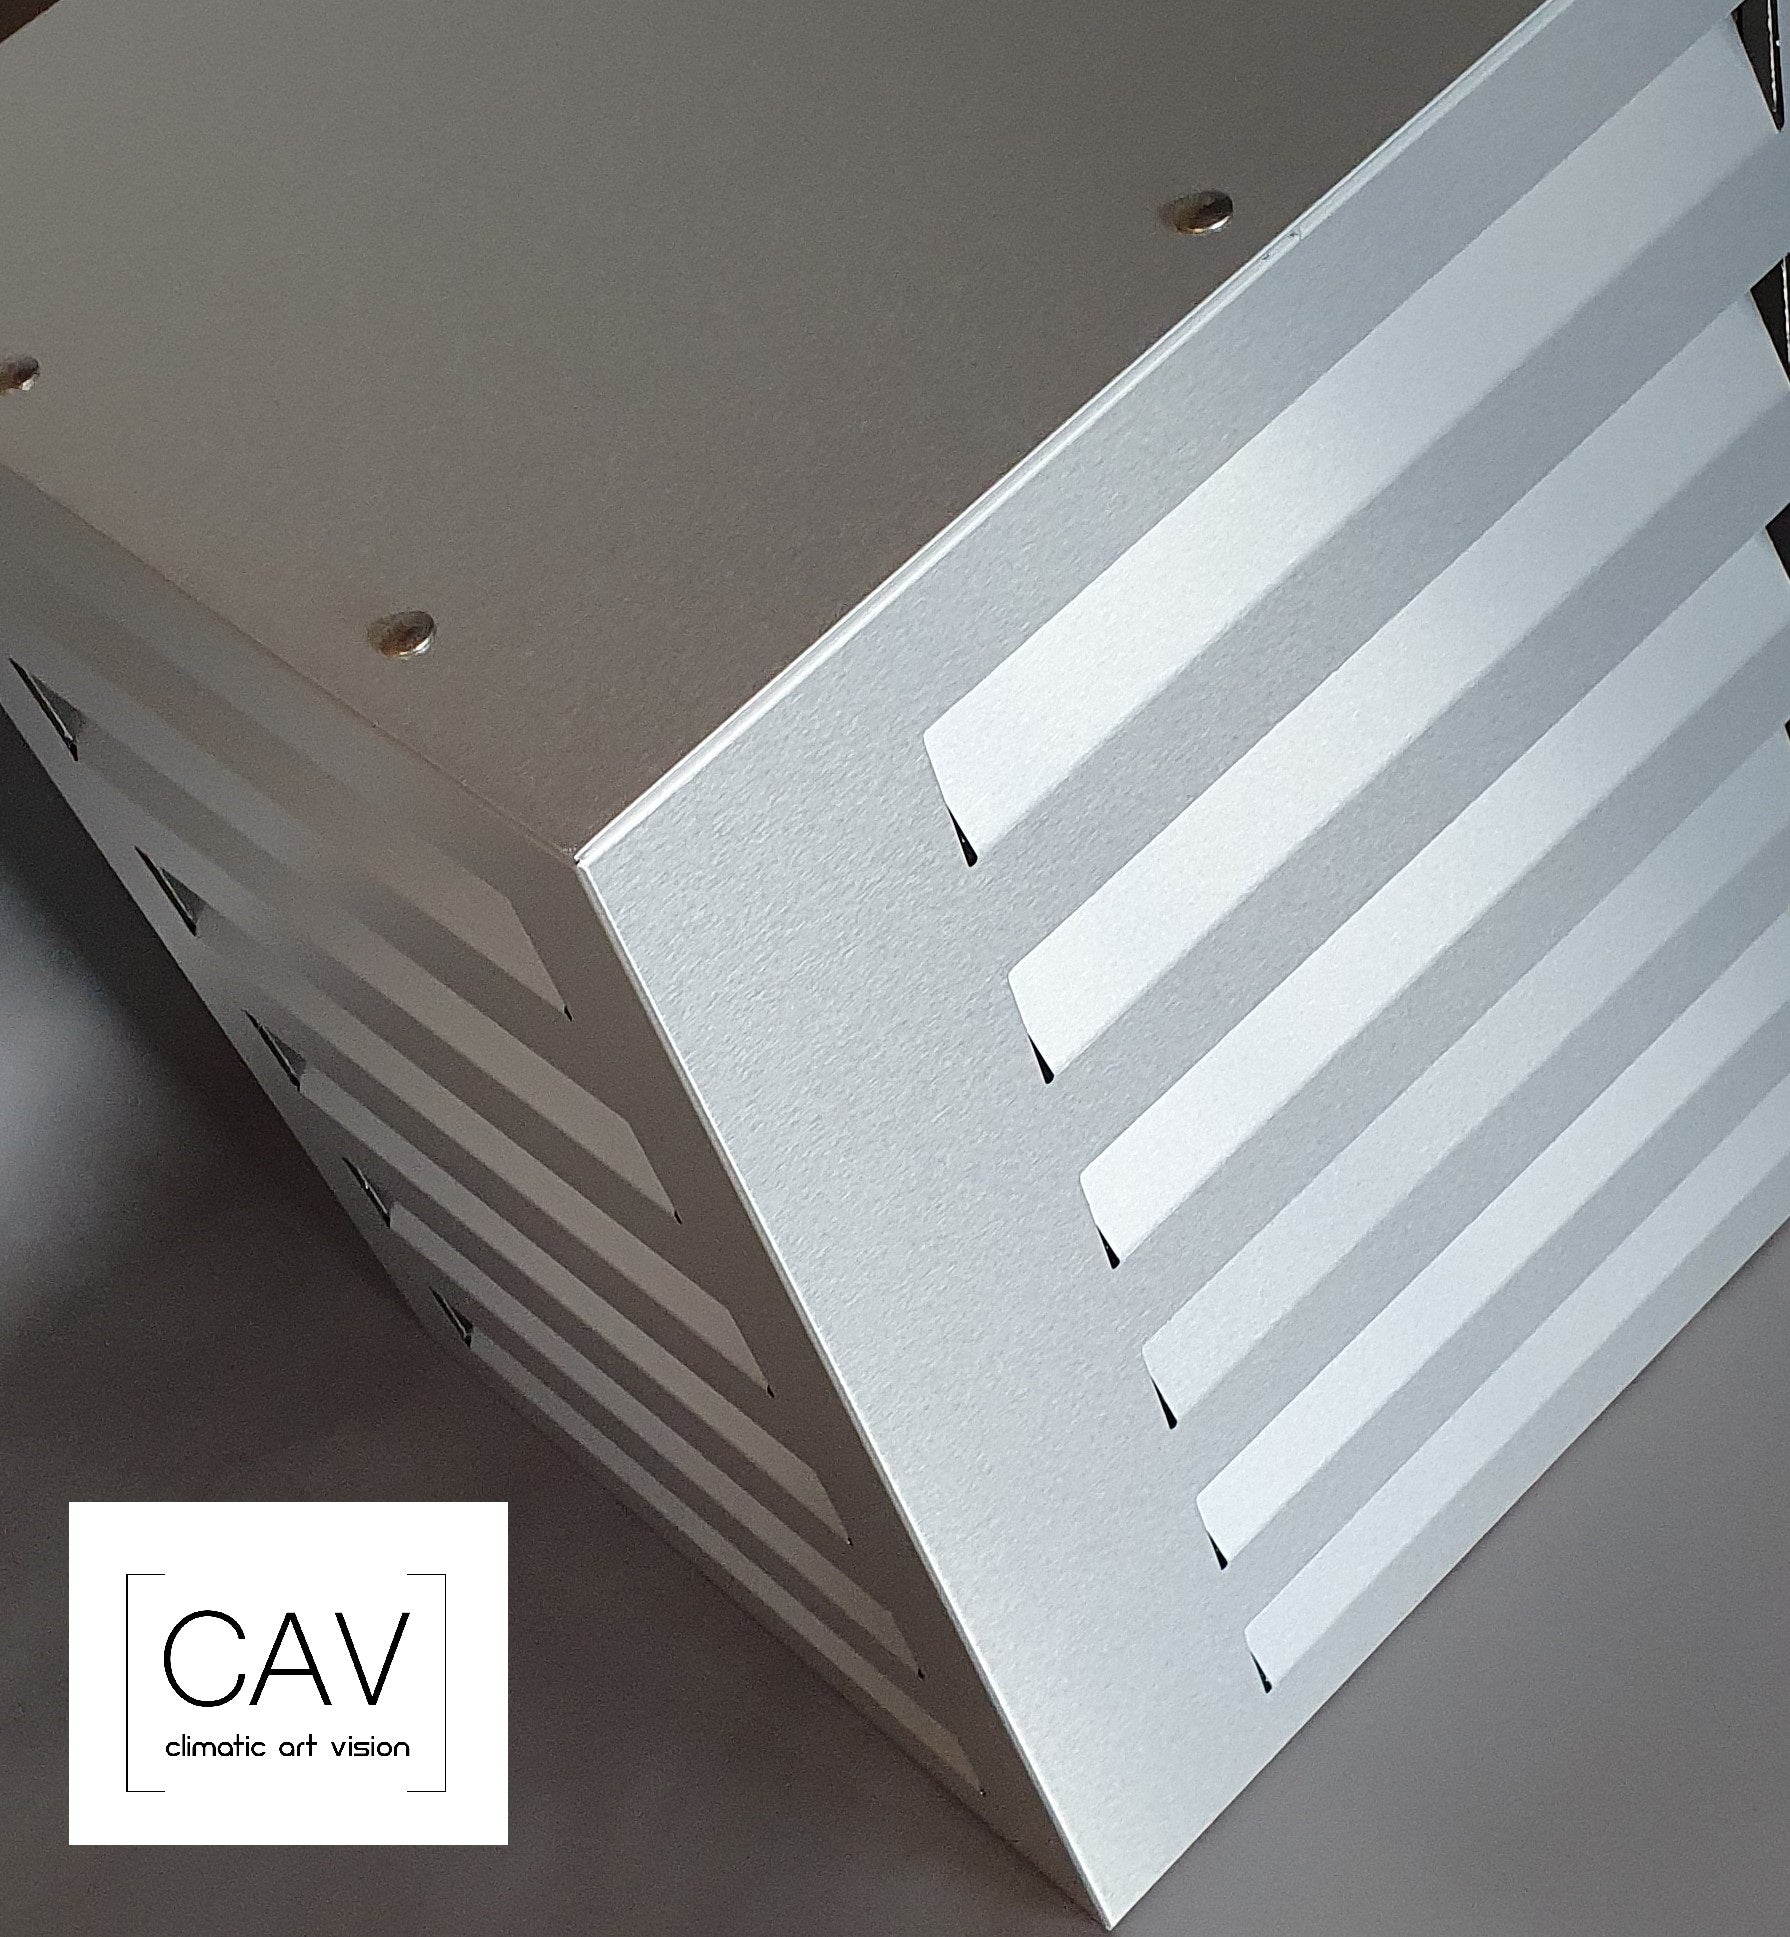 Verkleidung für Klimaanlagen, Designerverkleidung Klimagerät, Haube für  Klimaanlagen – CAV Climatic Art Vision ® GmbH